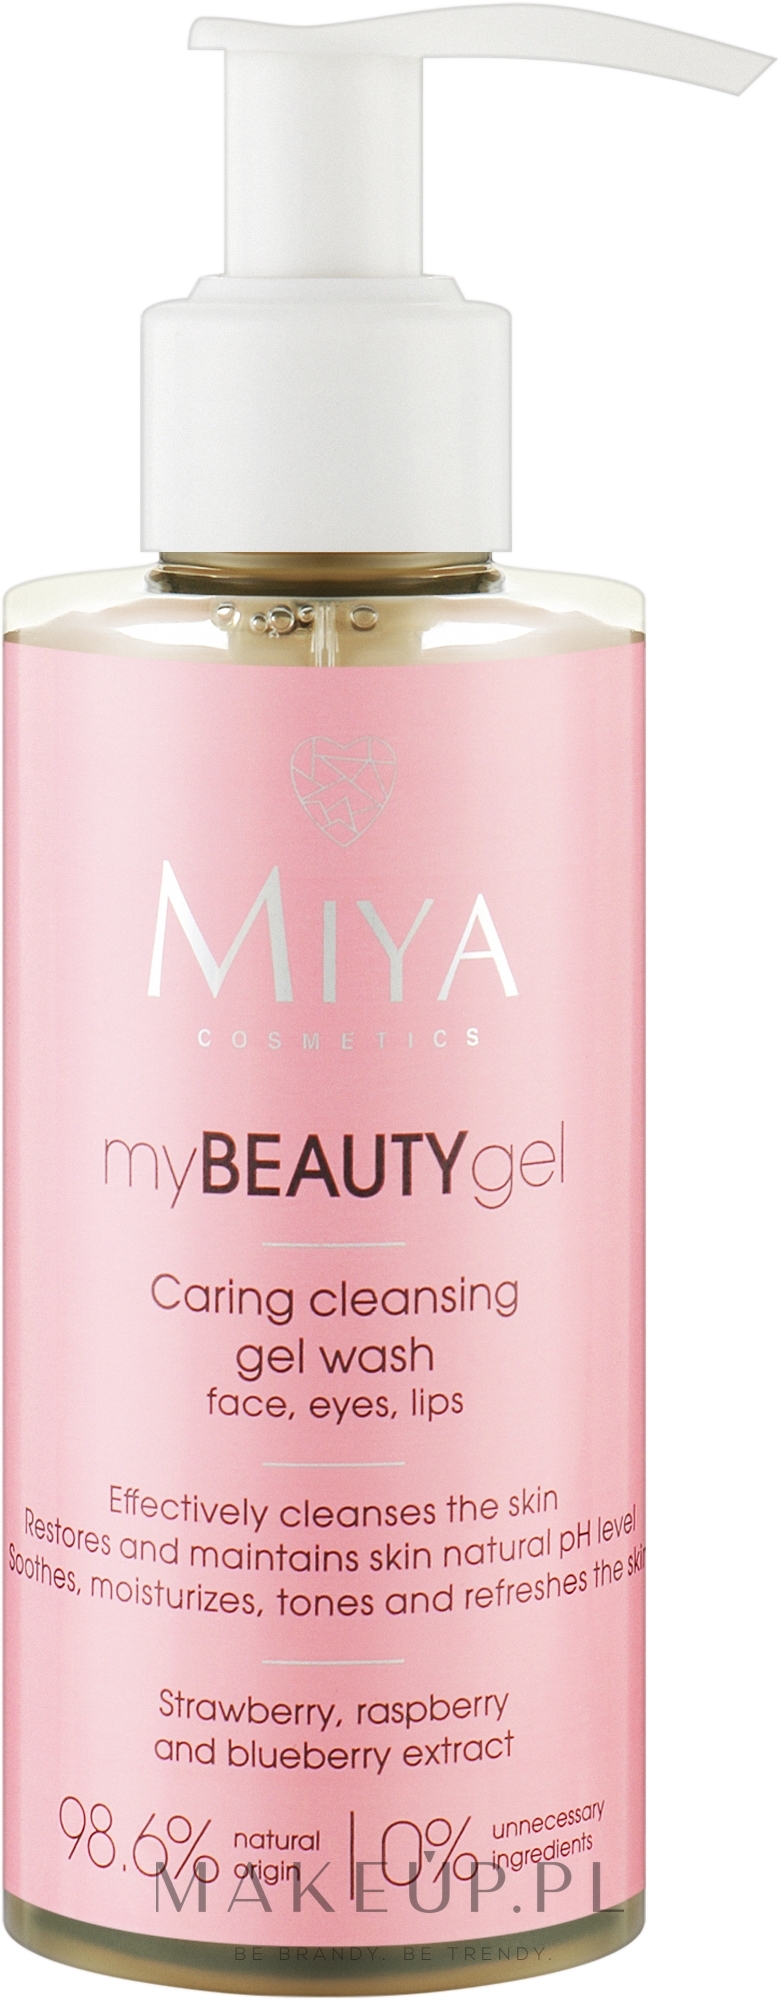 Oczyszczający żel do mycia twarzy - Miya Cosmetics myBEAUTYgel — Zdjęcie 140 ml